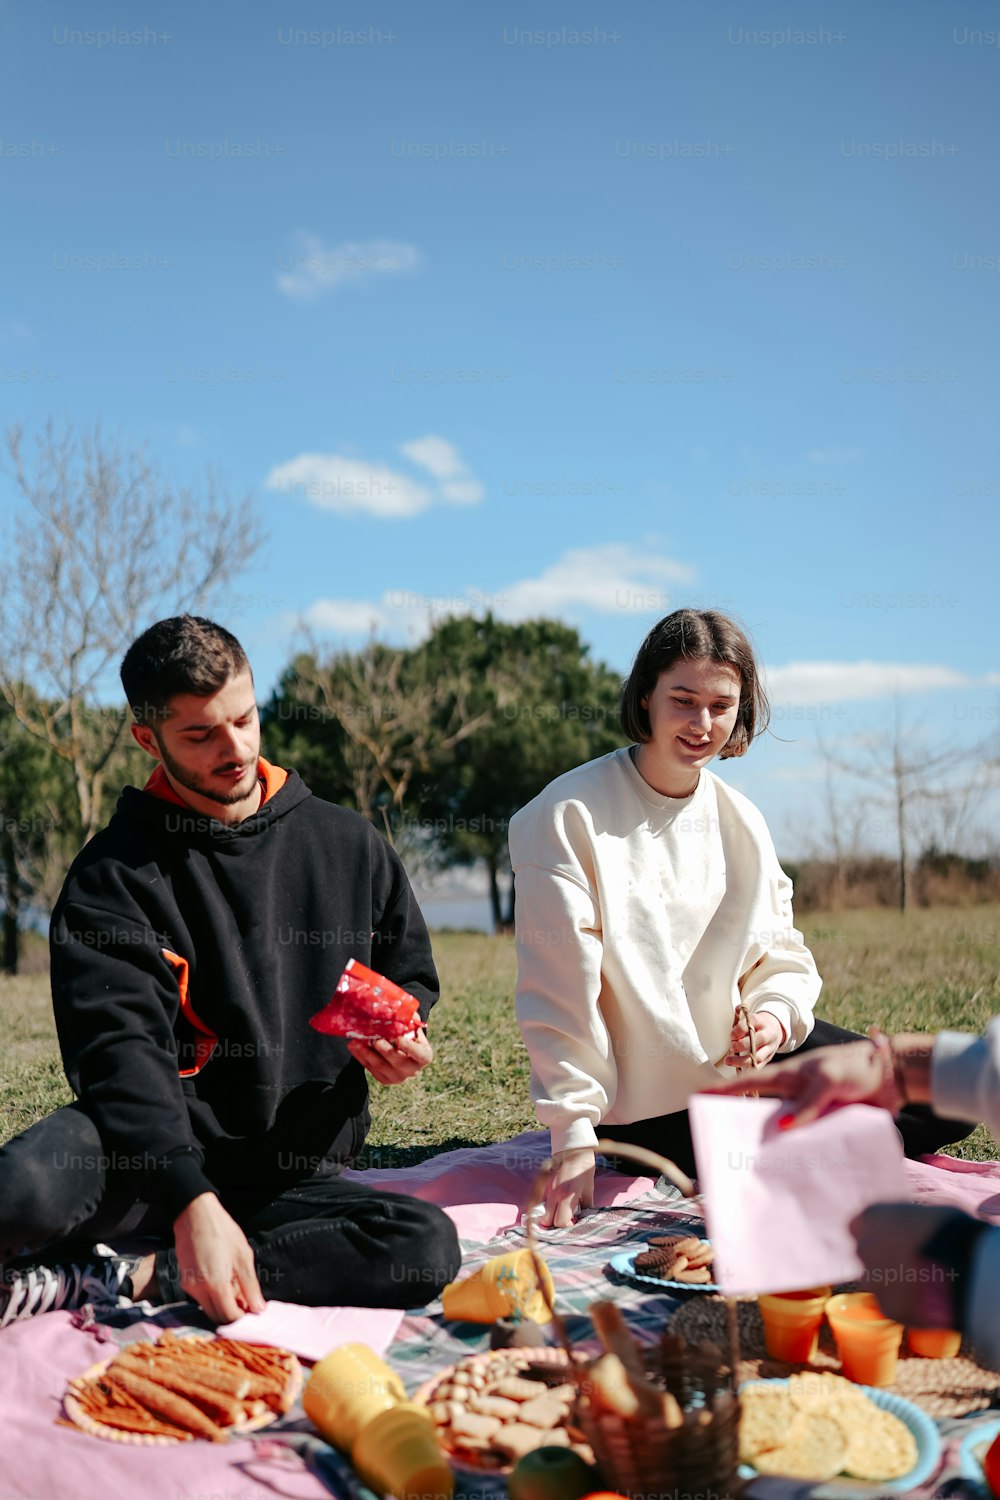 Ein Mann und eine Frau sitzen auf einer Decke und essen